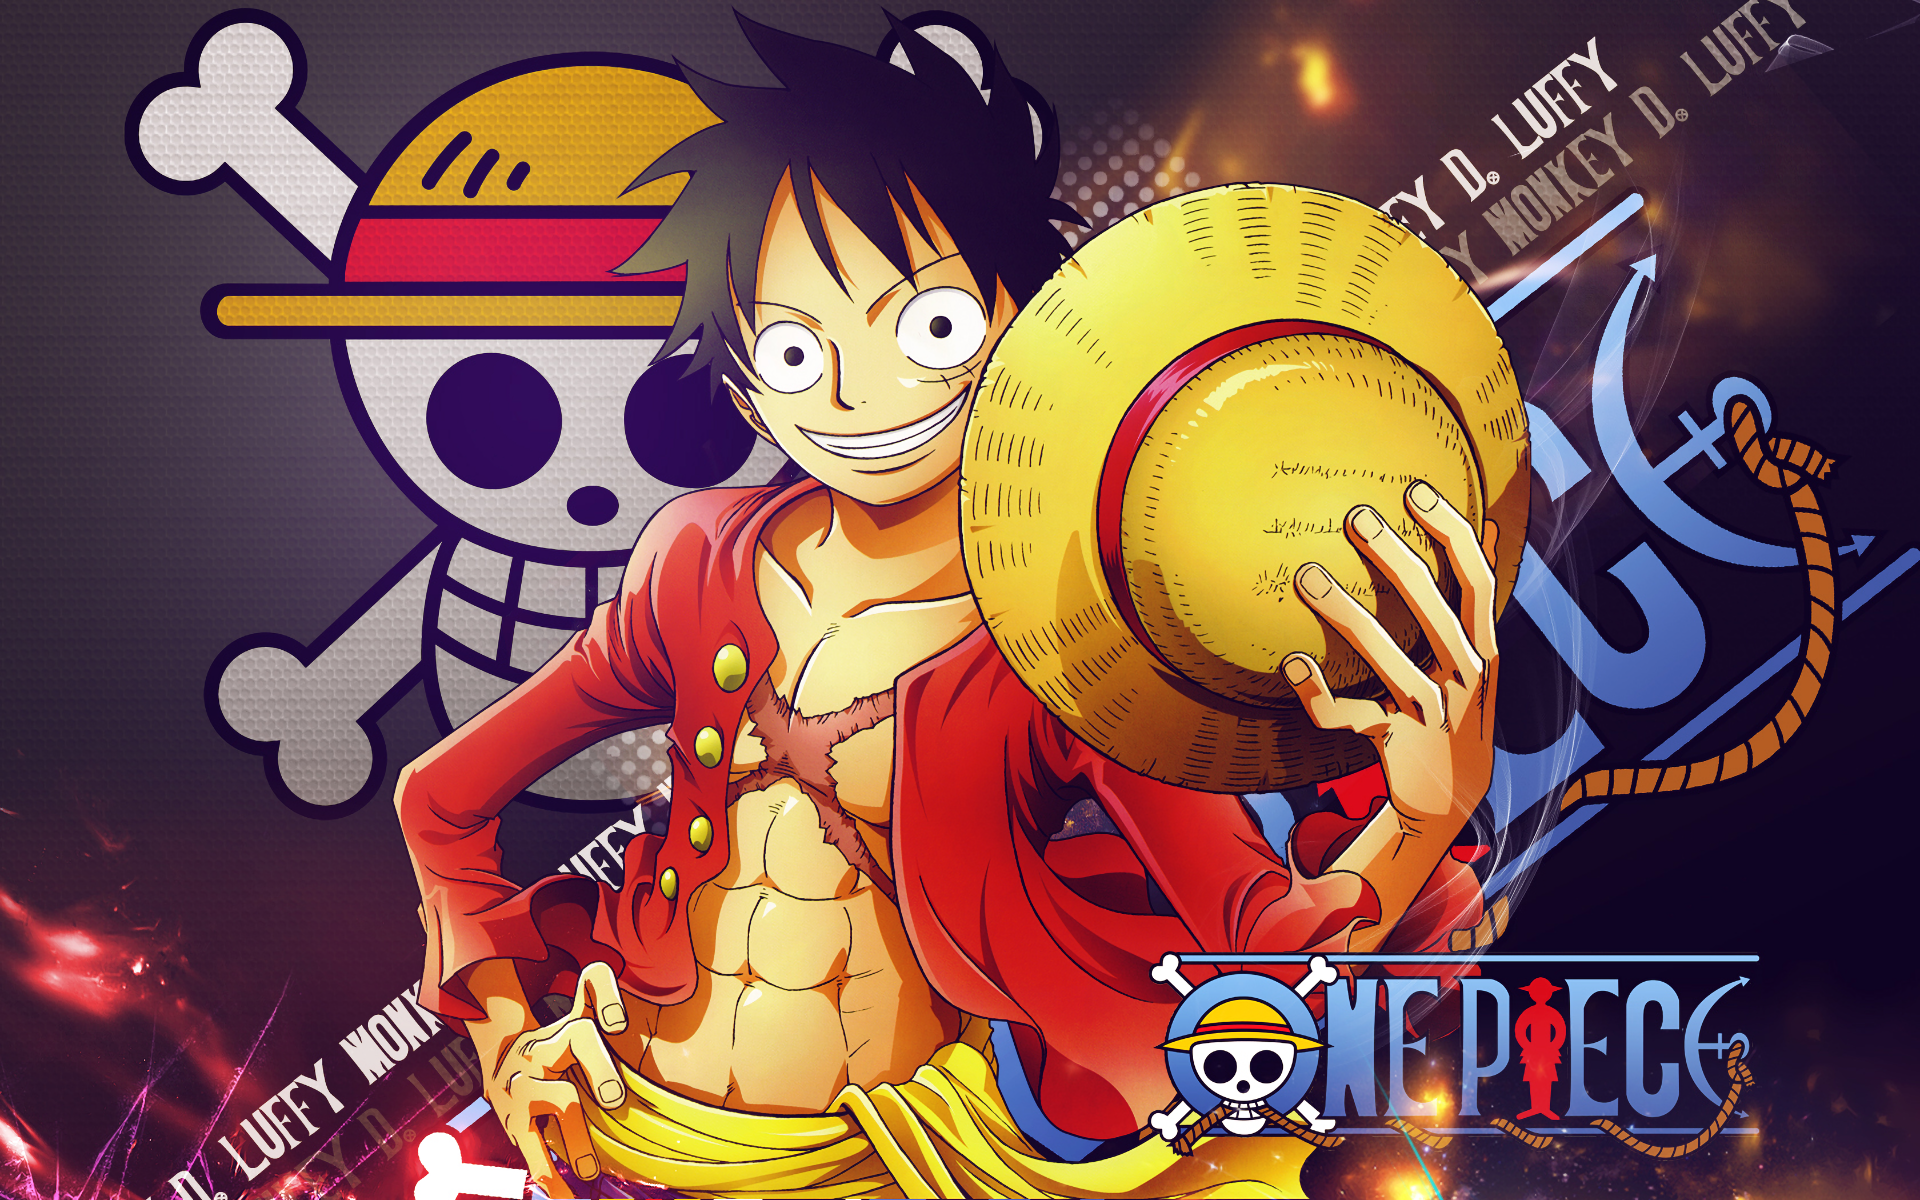 Đam mê One Piece và yêu thích các nét vẽ trong phim? Bộ sưu tập hình nền Anime One Piece HD sẽ đem đến cho bạn những bức hình tuyệt đẹp, sắc nét và sống động nhất! Hãy xem hình ảnh liên quan để có trải nghiệm đầy mãn nhãn!